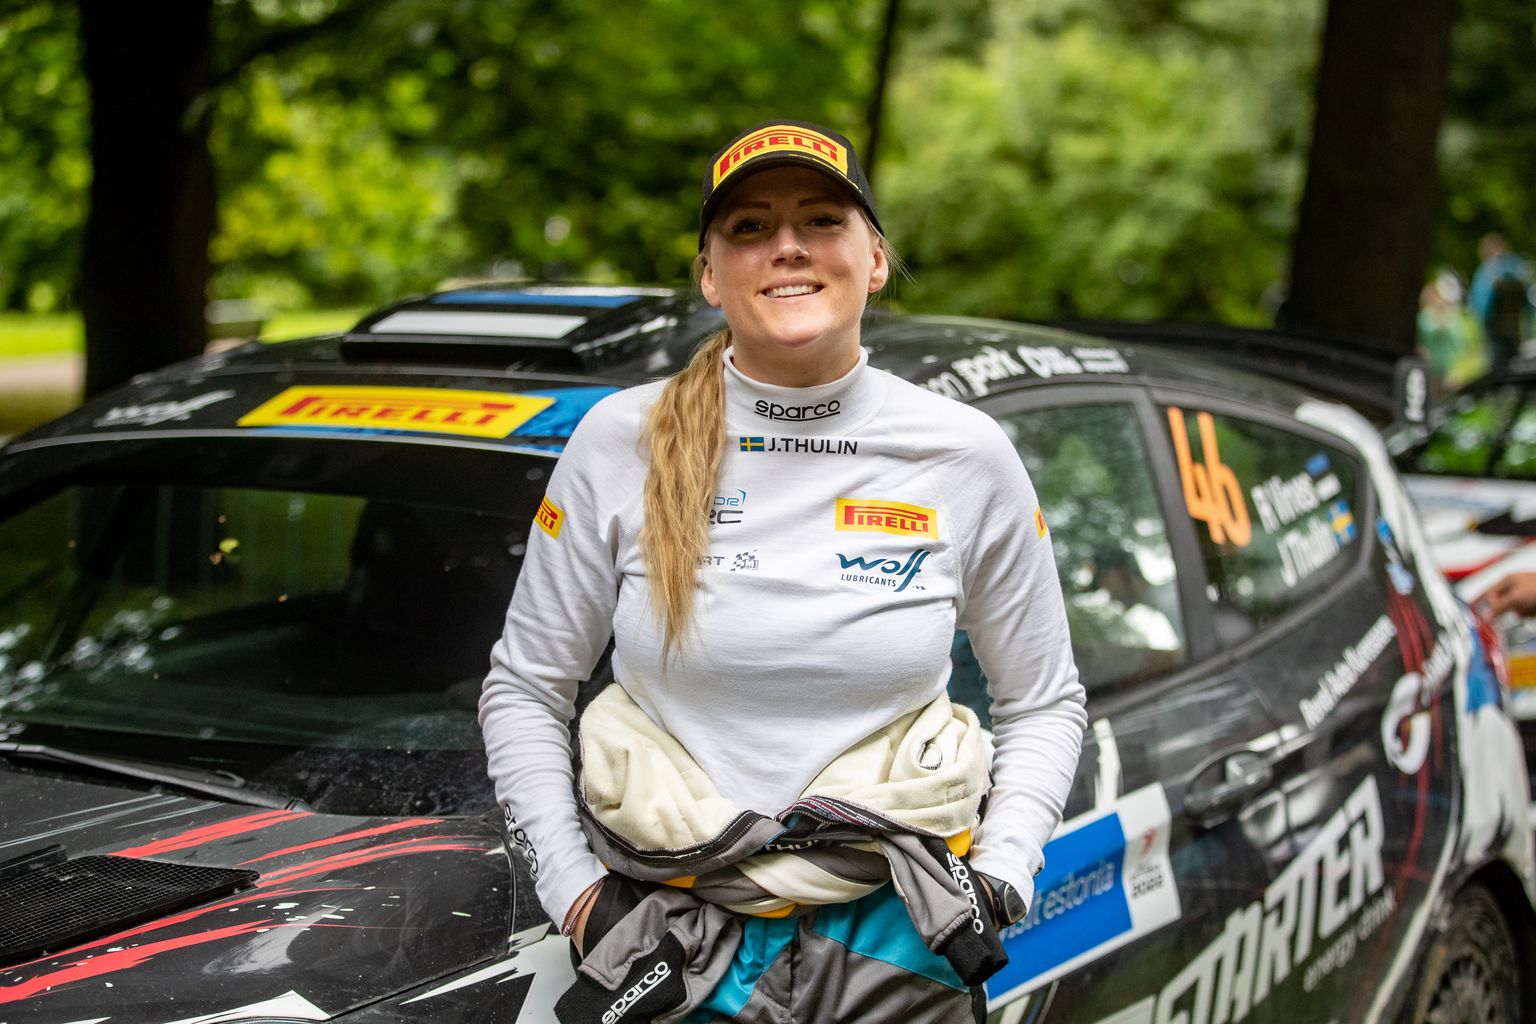 Junior WRC-sarja sõitja Robert Virvese kaardilugeja Julia Thulin tahab tulevikus end proovile panna WRC-klassis ehk Rally1-autodel.